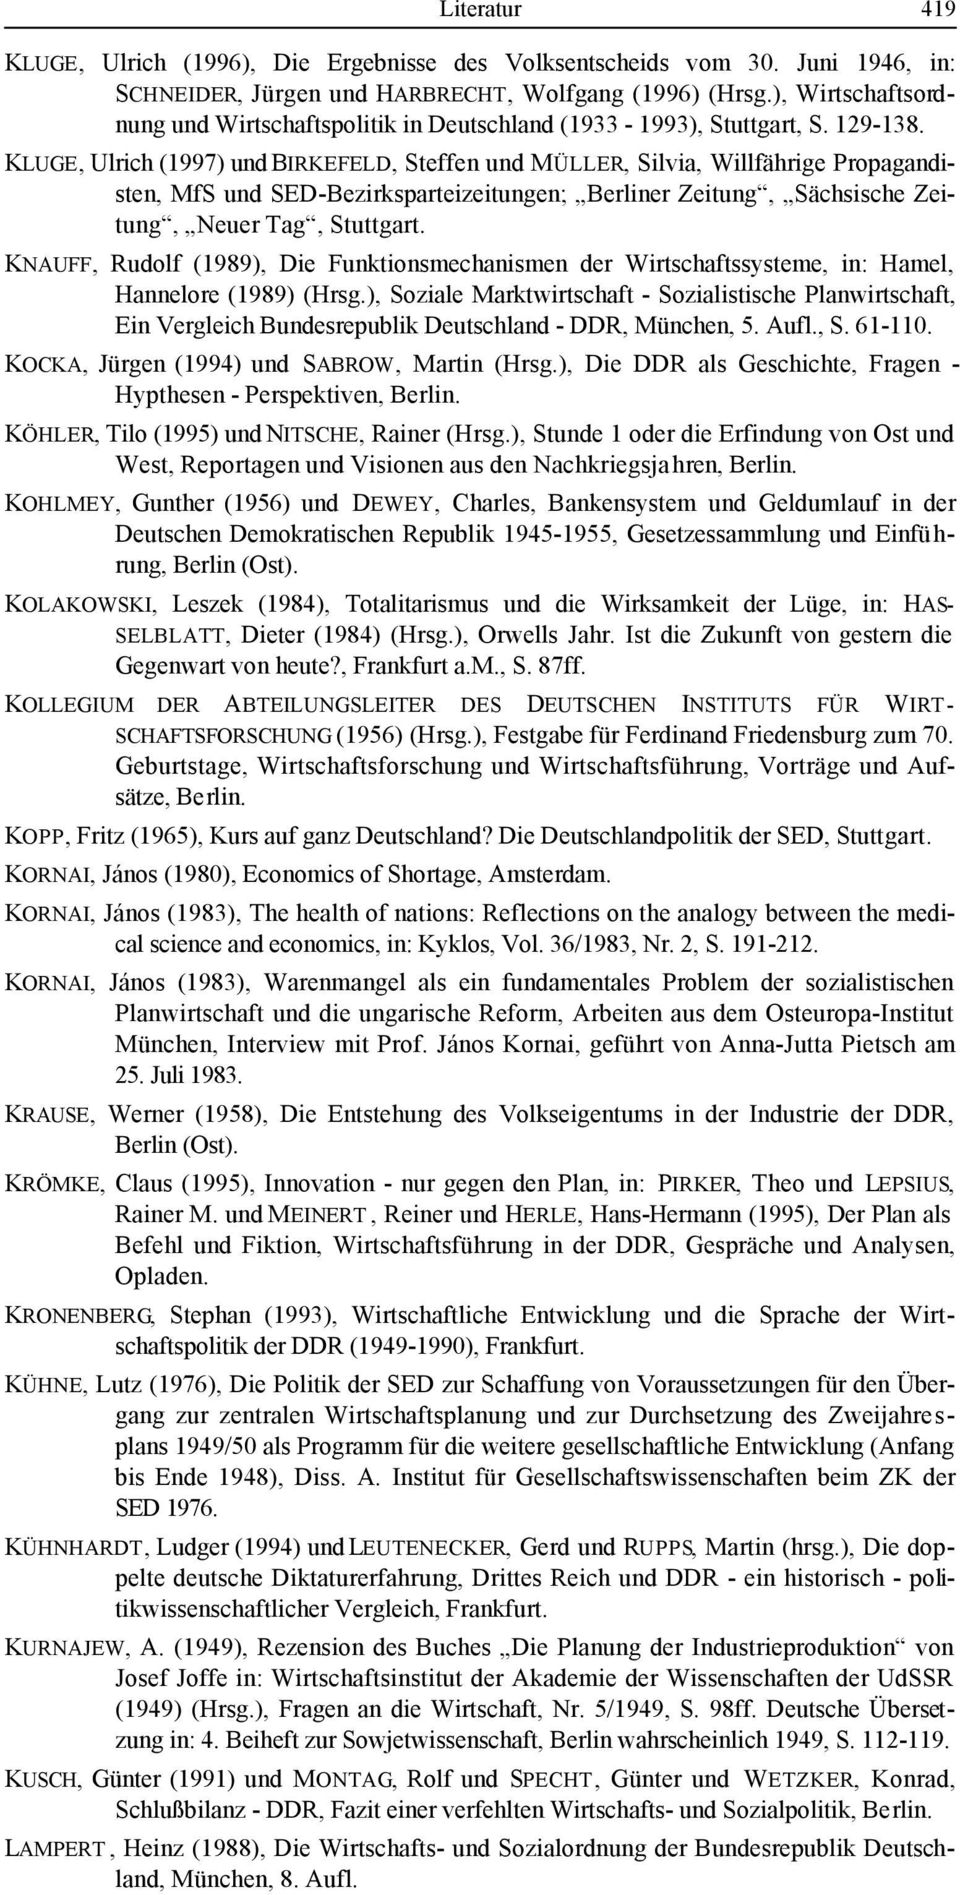 KLUGE, Ulrich (1997) und BIRKEFELD, Steffen und MÜLLER, Silvia, Willfährige Propagandisten, MfS und SED-Bezirksparteizeitungen; Berliner Zeitung, Sächsische Zeitung, Neuer Tag, Stuttgart.